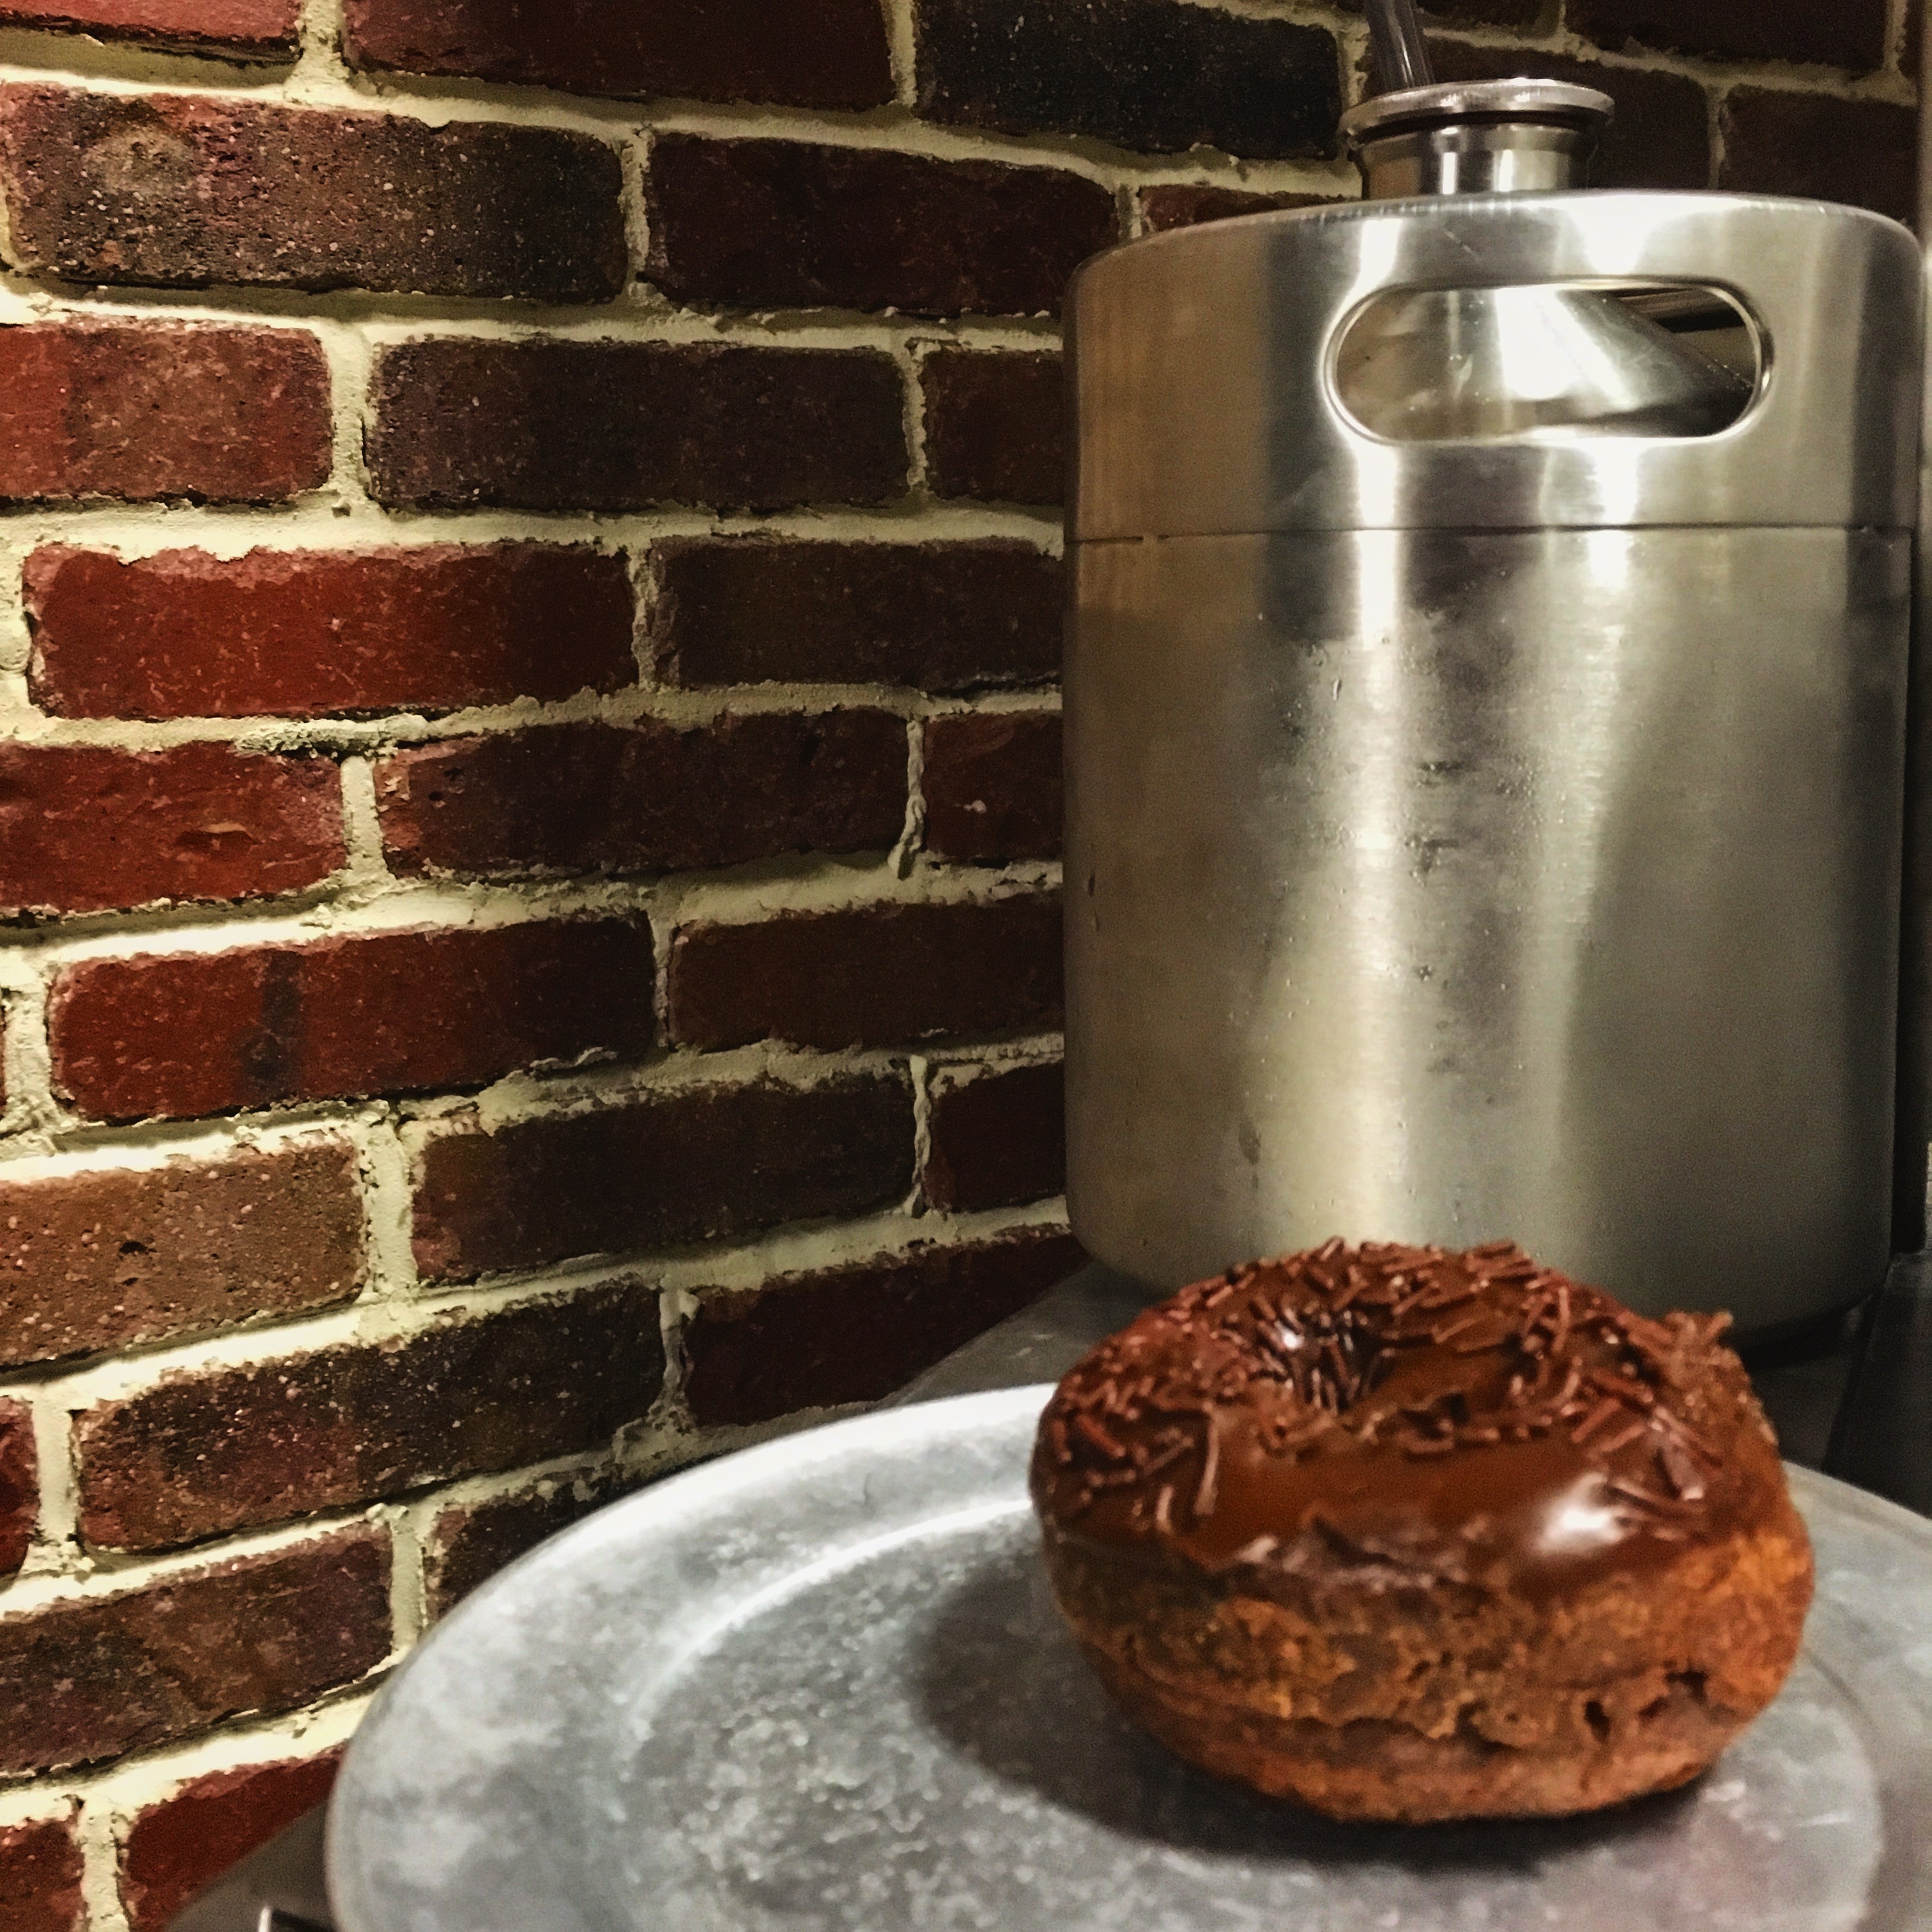 Baker's Dozen doughnut and a growler from Stung Fermented.